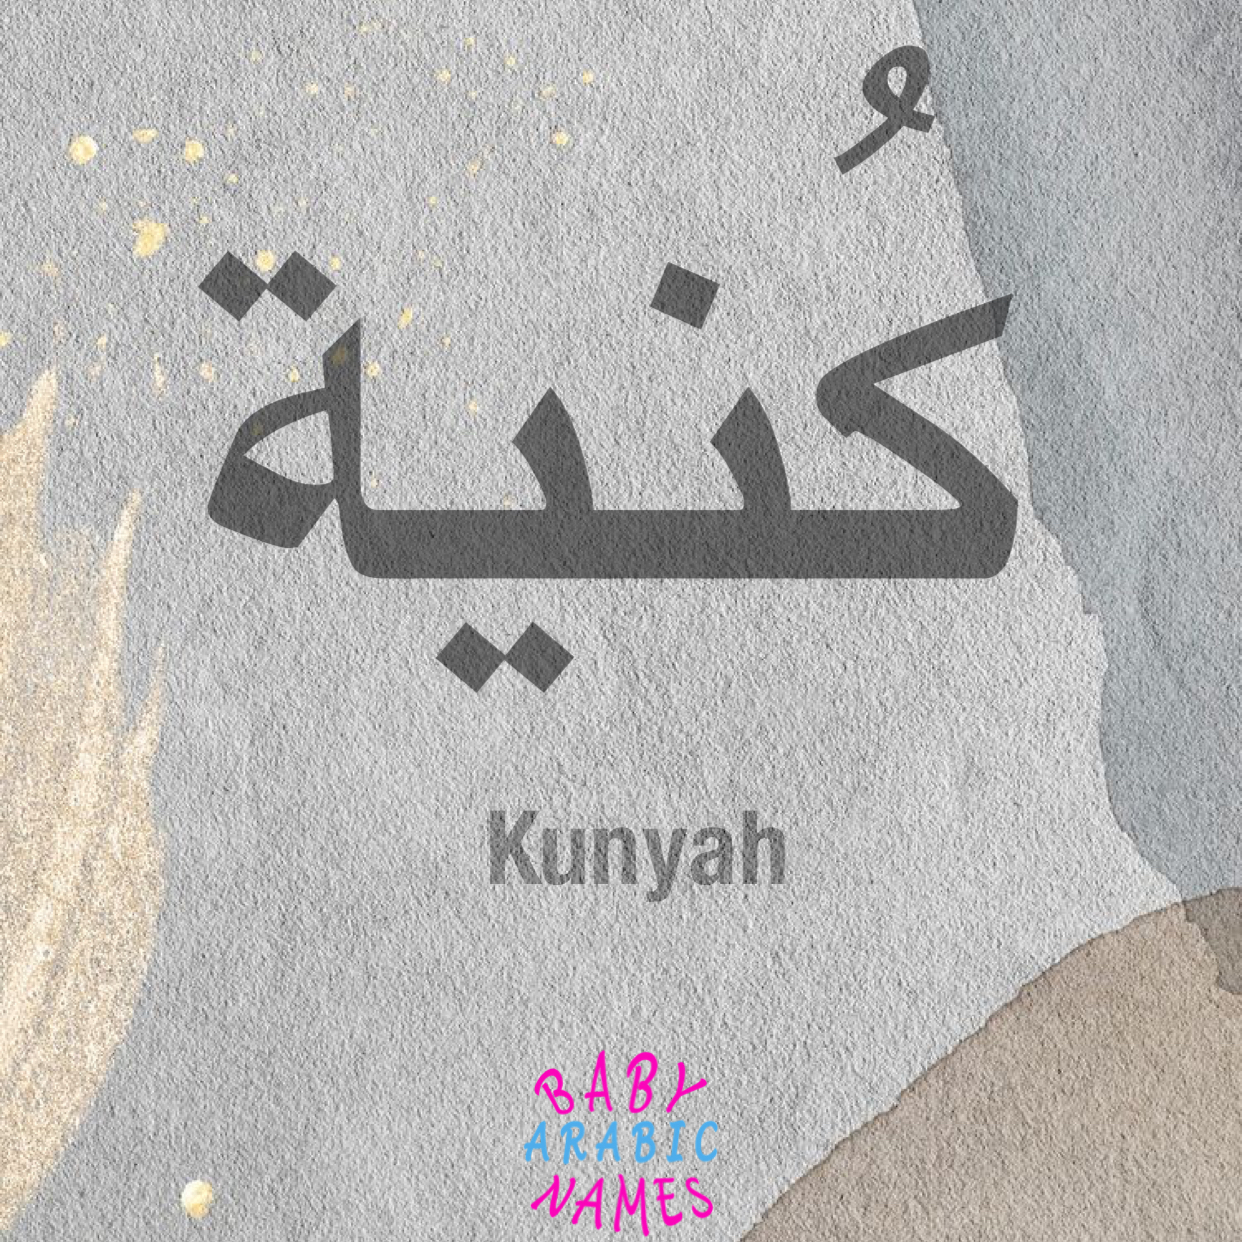 Kunyah